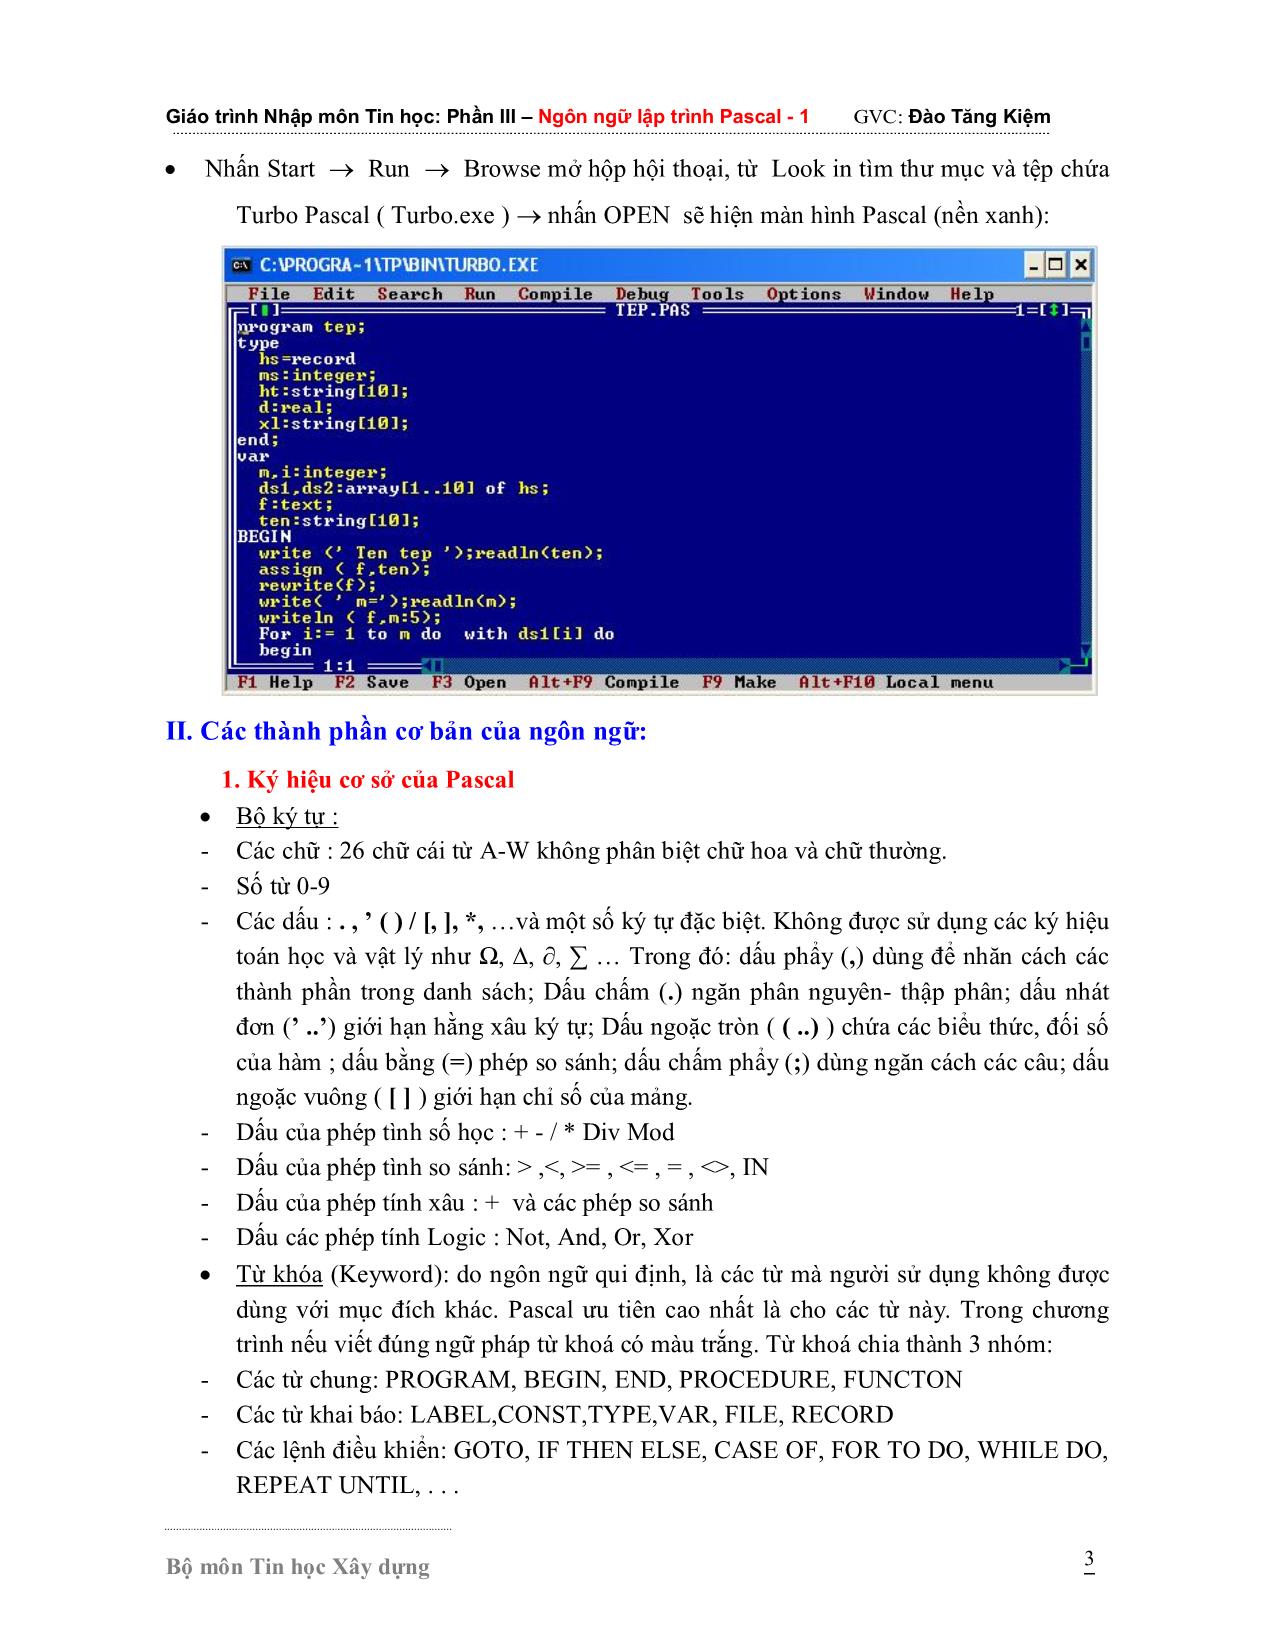 Giáo trình Nhập môn Tin học - Phần 3: Ngôn ngữ lập trình Pascal 1 trang 3